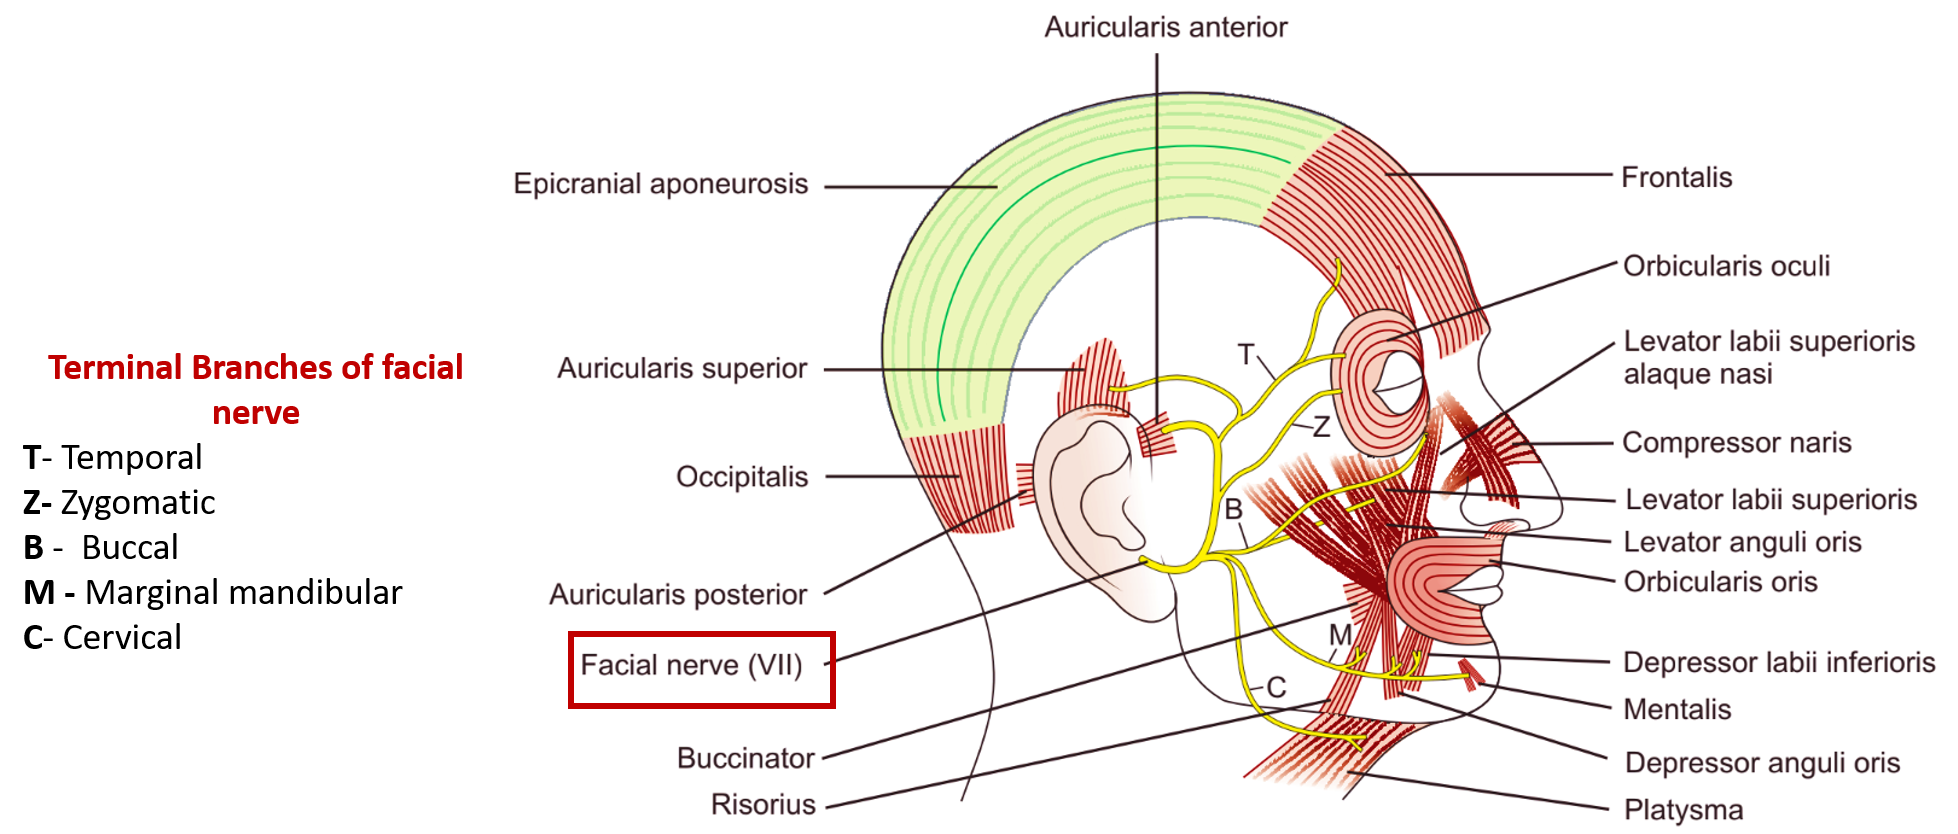 terminal branches of facial nerve